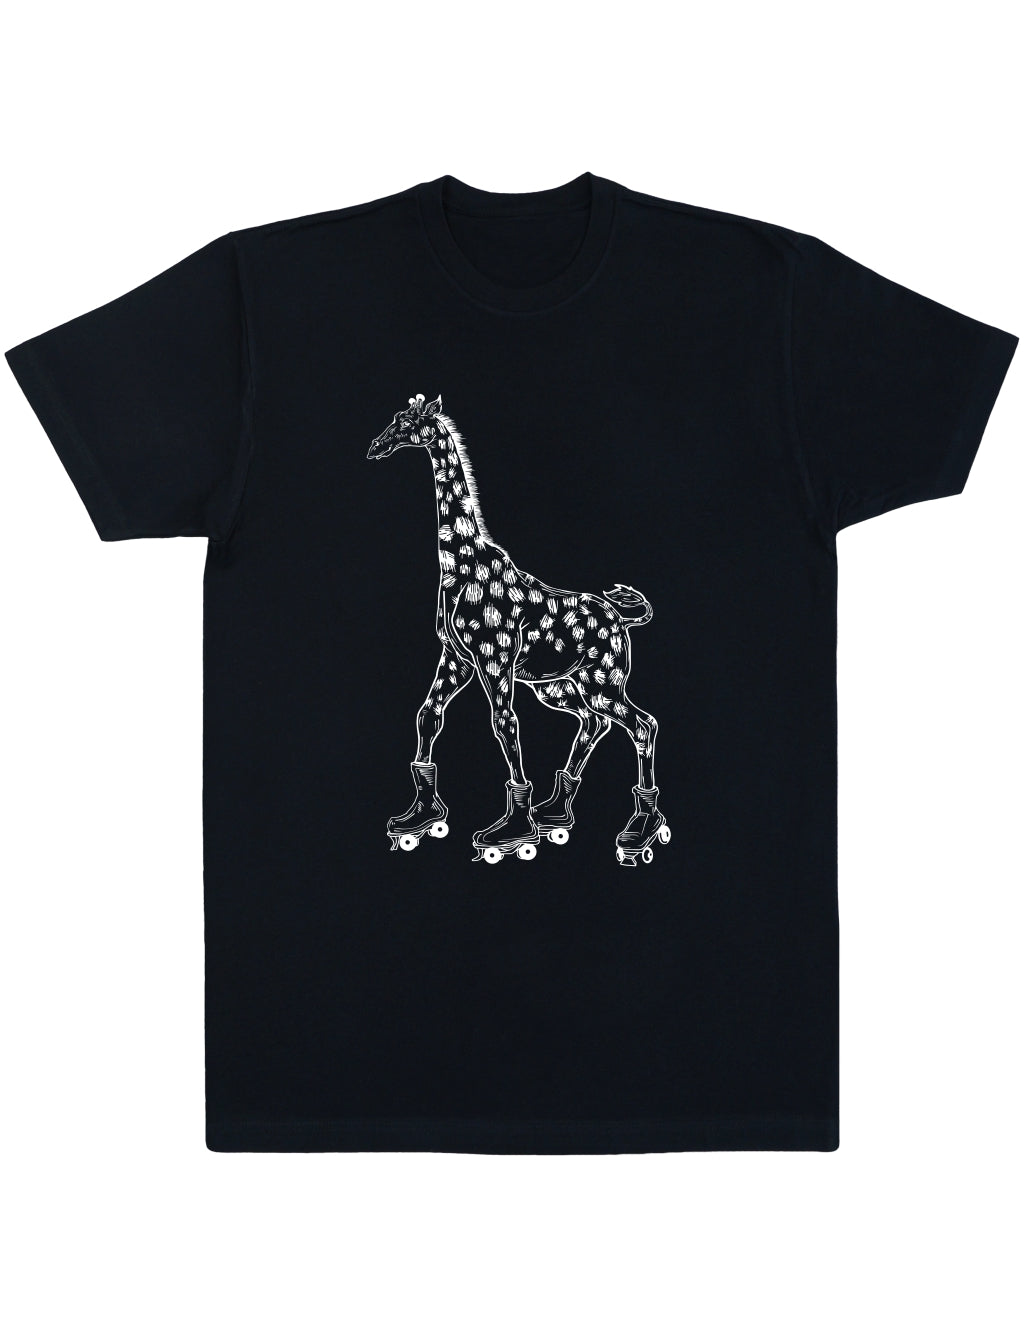 seembo-black-t-shirt-with-giraffe-skater-roller-skating-design